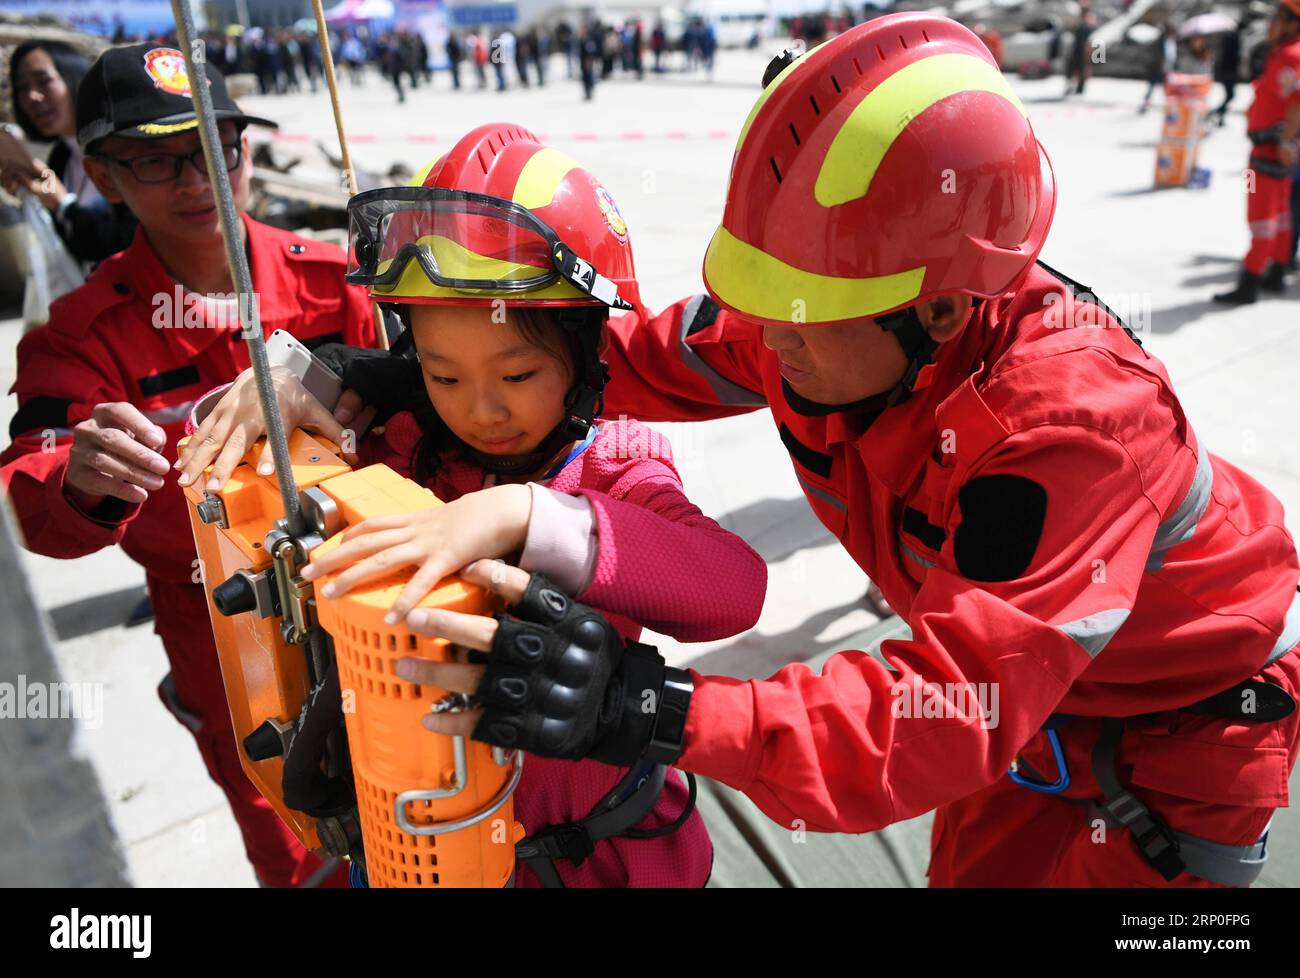 (180512) -- LANZHOU, le 12 mai 2018 -- Un enfant expérimente et apprend à s'évader lors d'une journée portes ouvertes dans un centre national de formation pour la recherche et le sauvetage terrestres, à Lanzhou, dans la province du Gansu, dans le nord-ouest de la Chine, le 12 mai 2018. Samedi a marqué la journée nationale de la Chine pour la prévention des catastrophes et les secours, qui commémore le tremblement de terre de Wenchuan en 2008 qui a fait plus de 80 000 morts ou disparus. (Lb) CHINA-GANSU-LANZHOU-DISASTER PREVENTION-OPEN DAY (CN) ChenxBin PUBLICATIONxNOTxINxCHN Banque D'Images